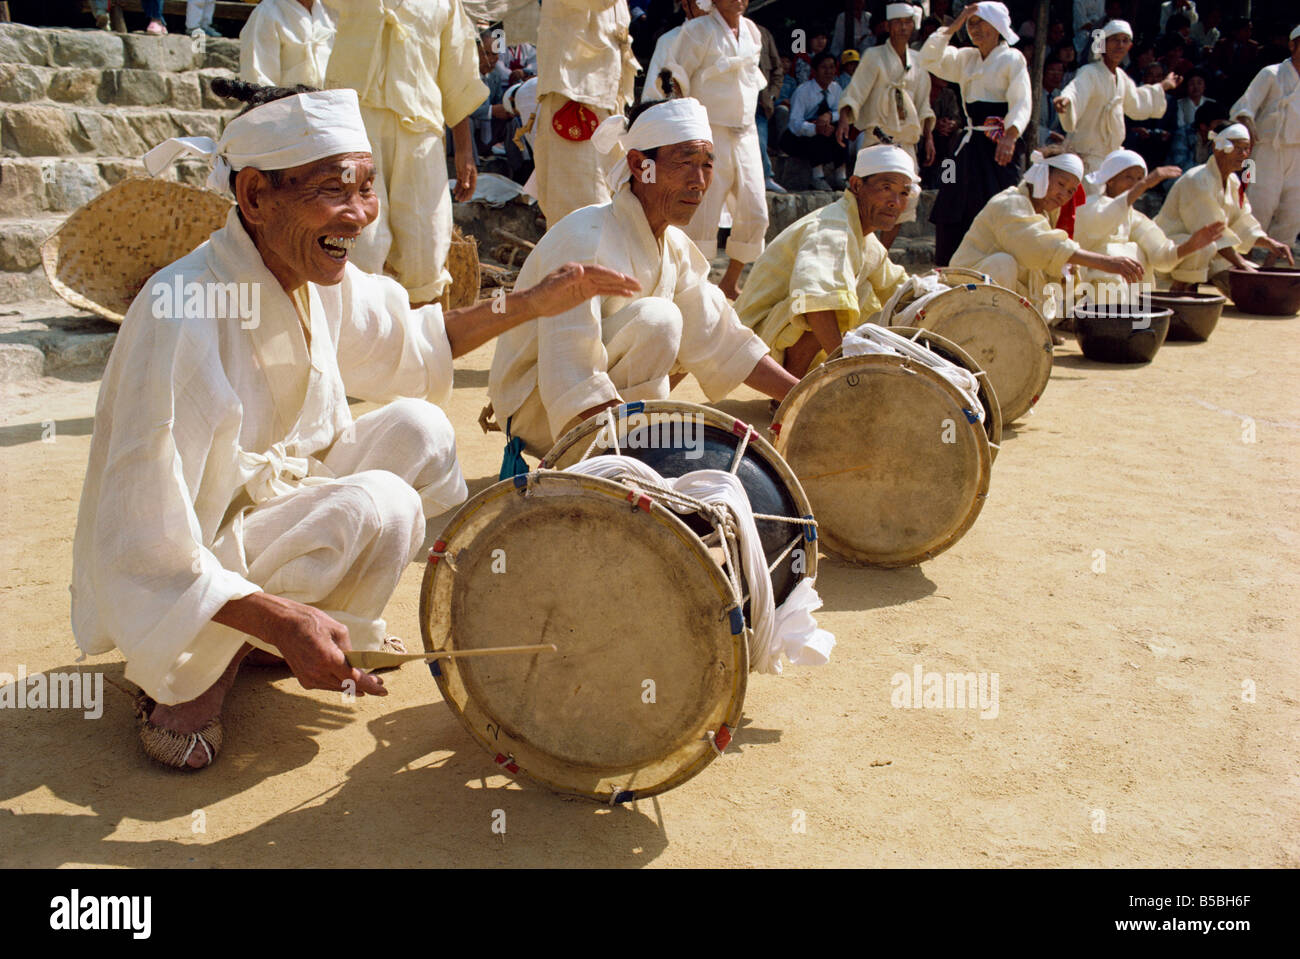 Männer, die Trommeln schlagen, während die traditionellen Bauern tanzen ursprünglich von Wando Insel Chollanam Provinz South Korea Asien A Evrard Stockfoto